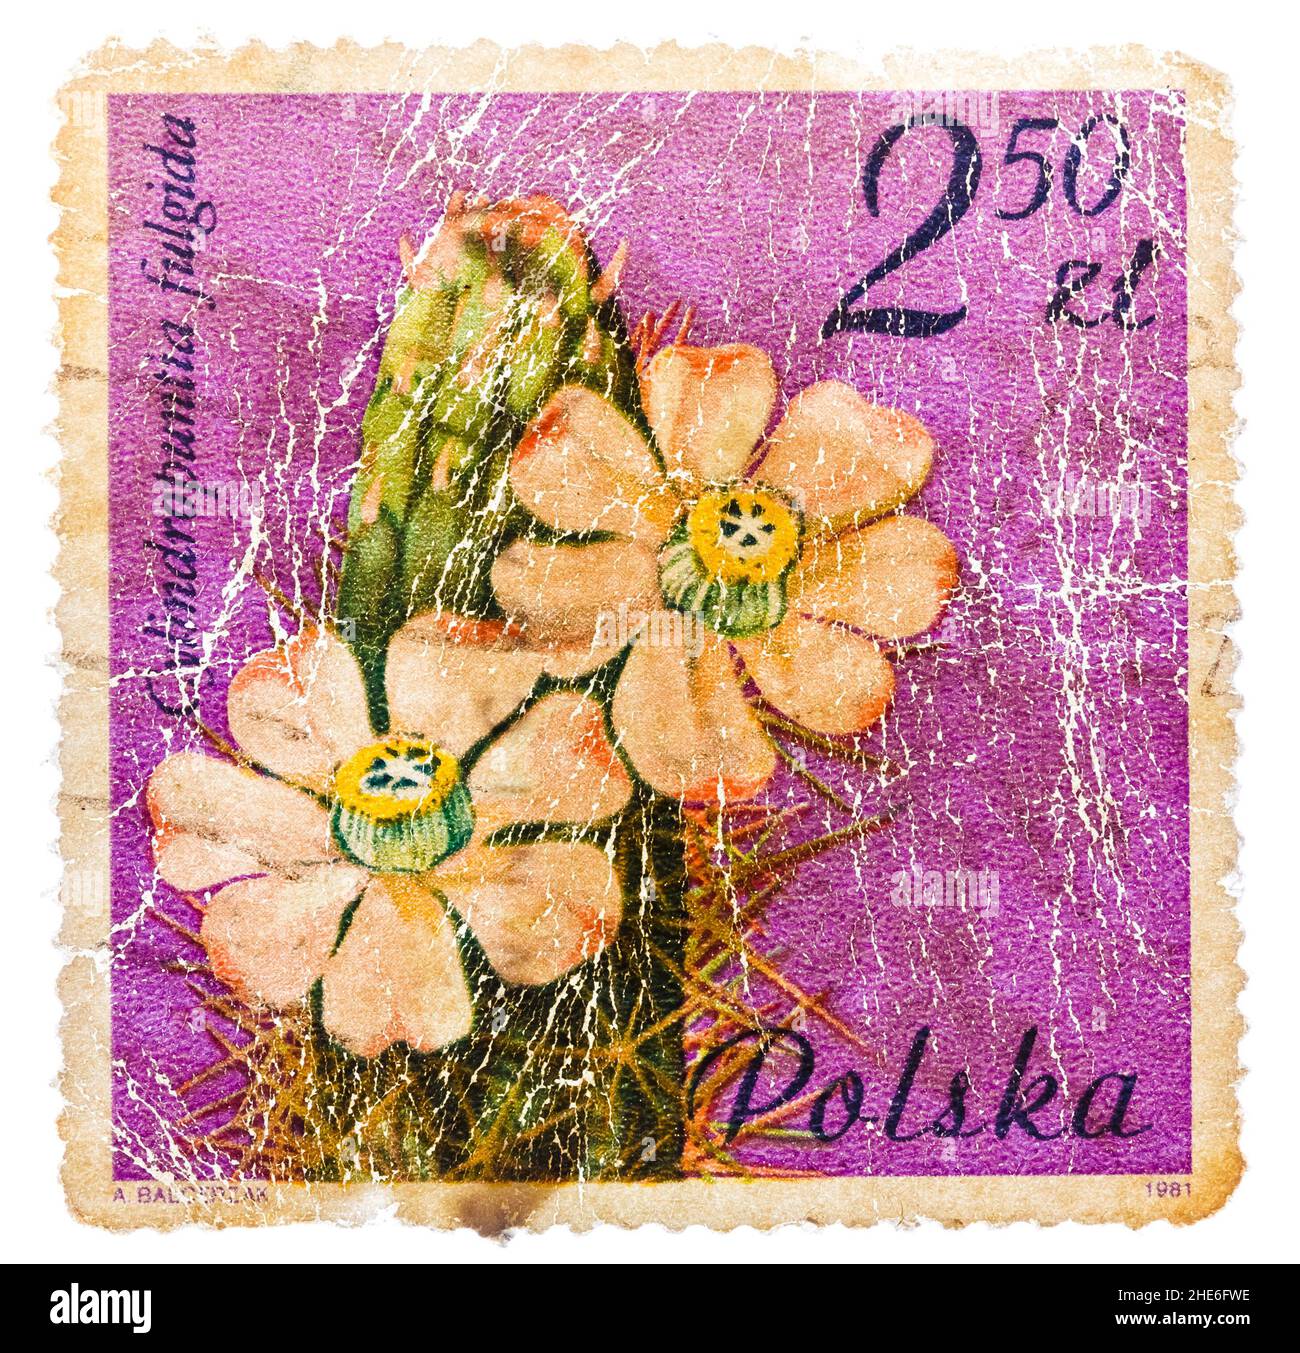 Le timbre imprimé en POLOGNE montre un cactus aux fleurs rose clair Banque D'Images